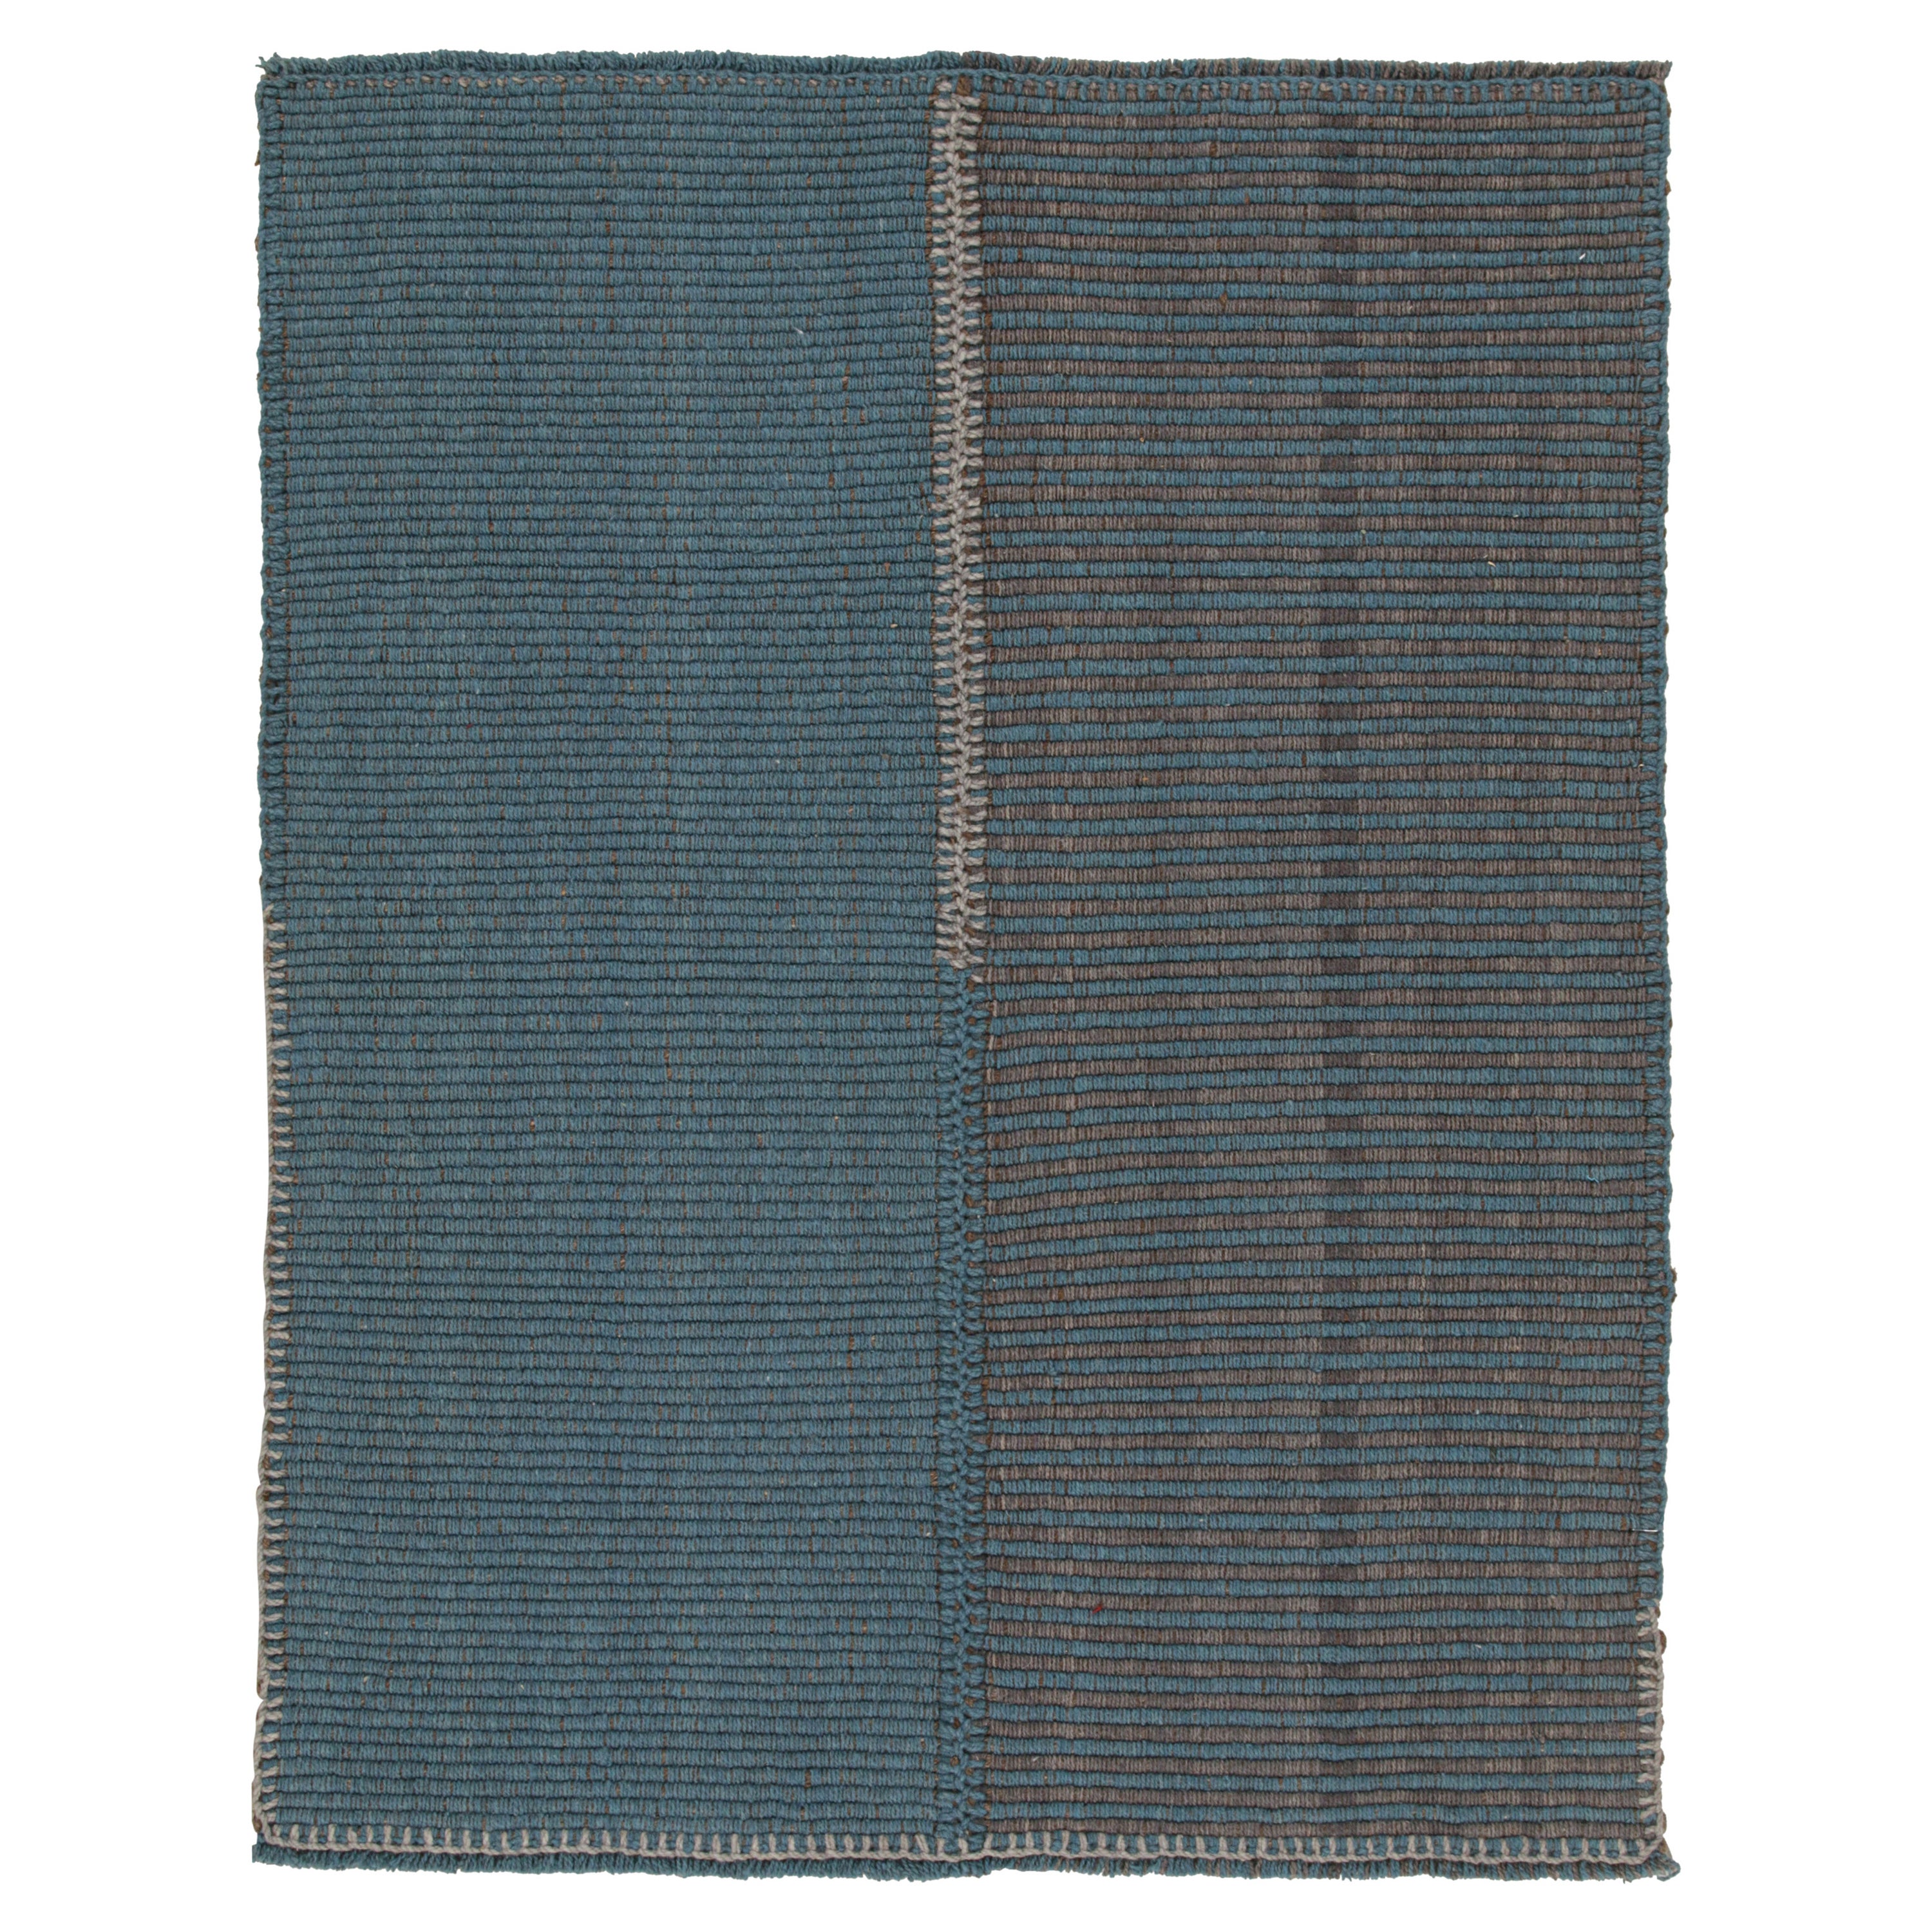 Rug & Kilim's Contemporary Kilim in Blue and Gray Stripes with Brown Accents (Kilim contemporain à rayures bleues et grises avec des accents bruns)